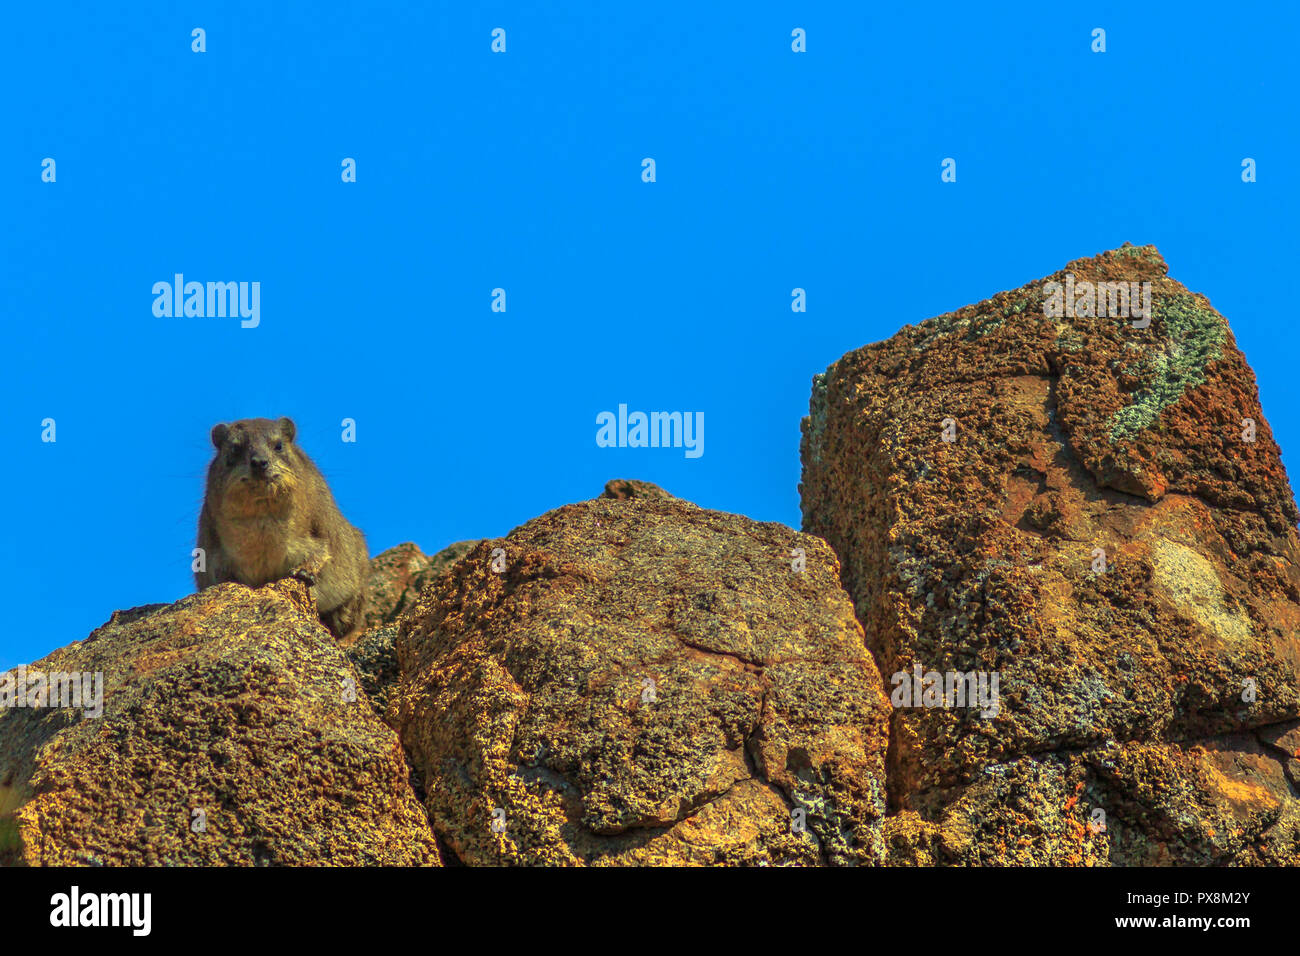 Rock Hyraxs auf den Felsen in der Natur Lebensraum, Südafrika. Der Kap irace, Procavia procavia Capensis, auch genannt der Felsen oder Klippschliefer in Afrikanischen am blauen Himmel. Kopieren Sie Platz. Stockfoto